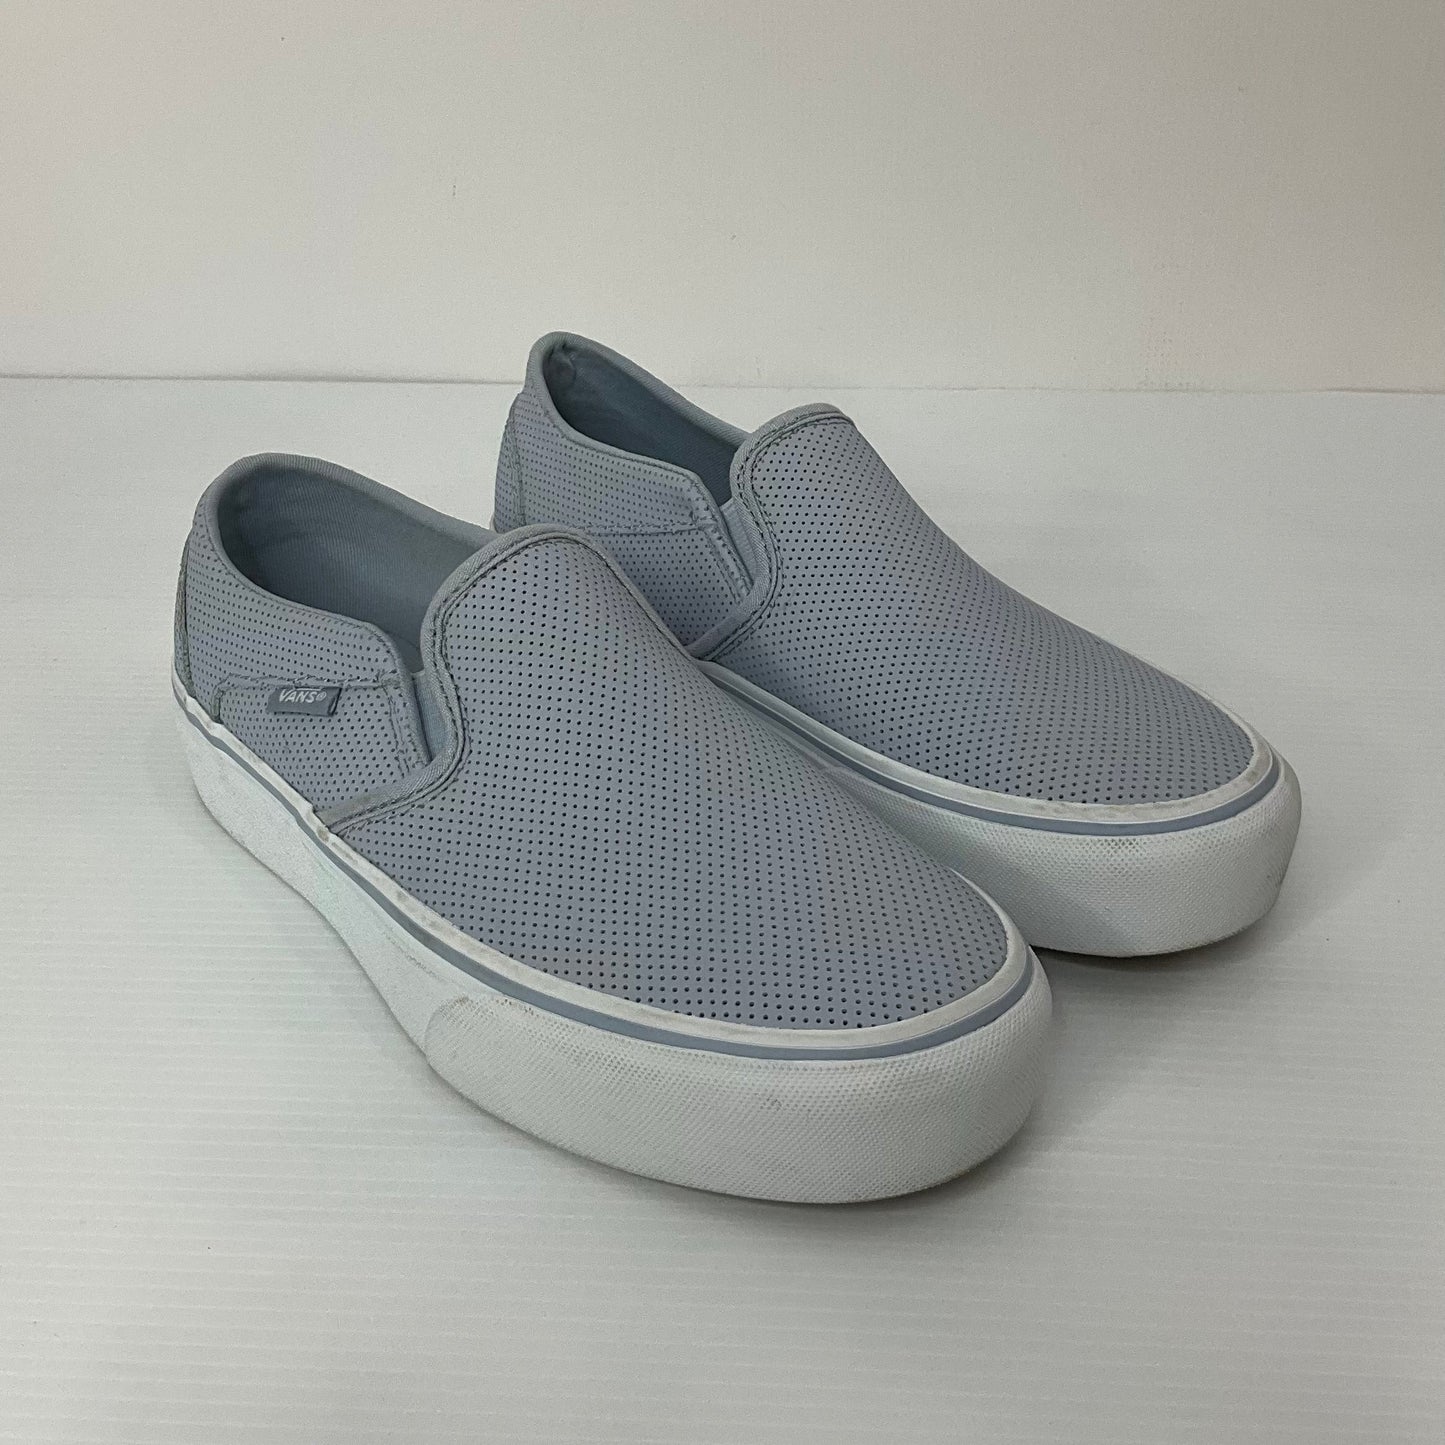 Blue Shoes Flats Vans, Size 8.5